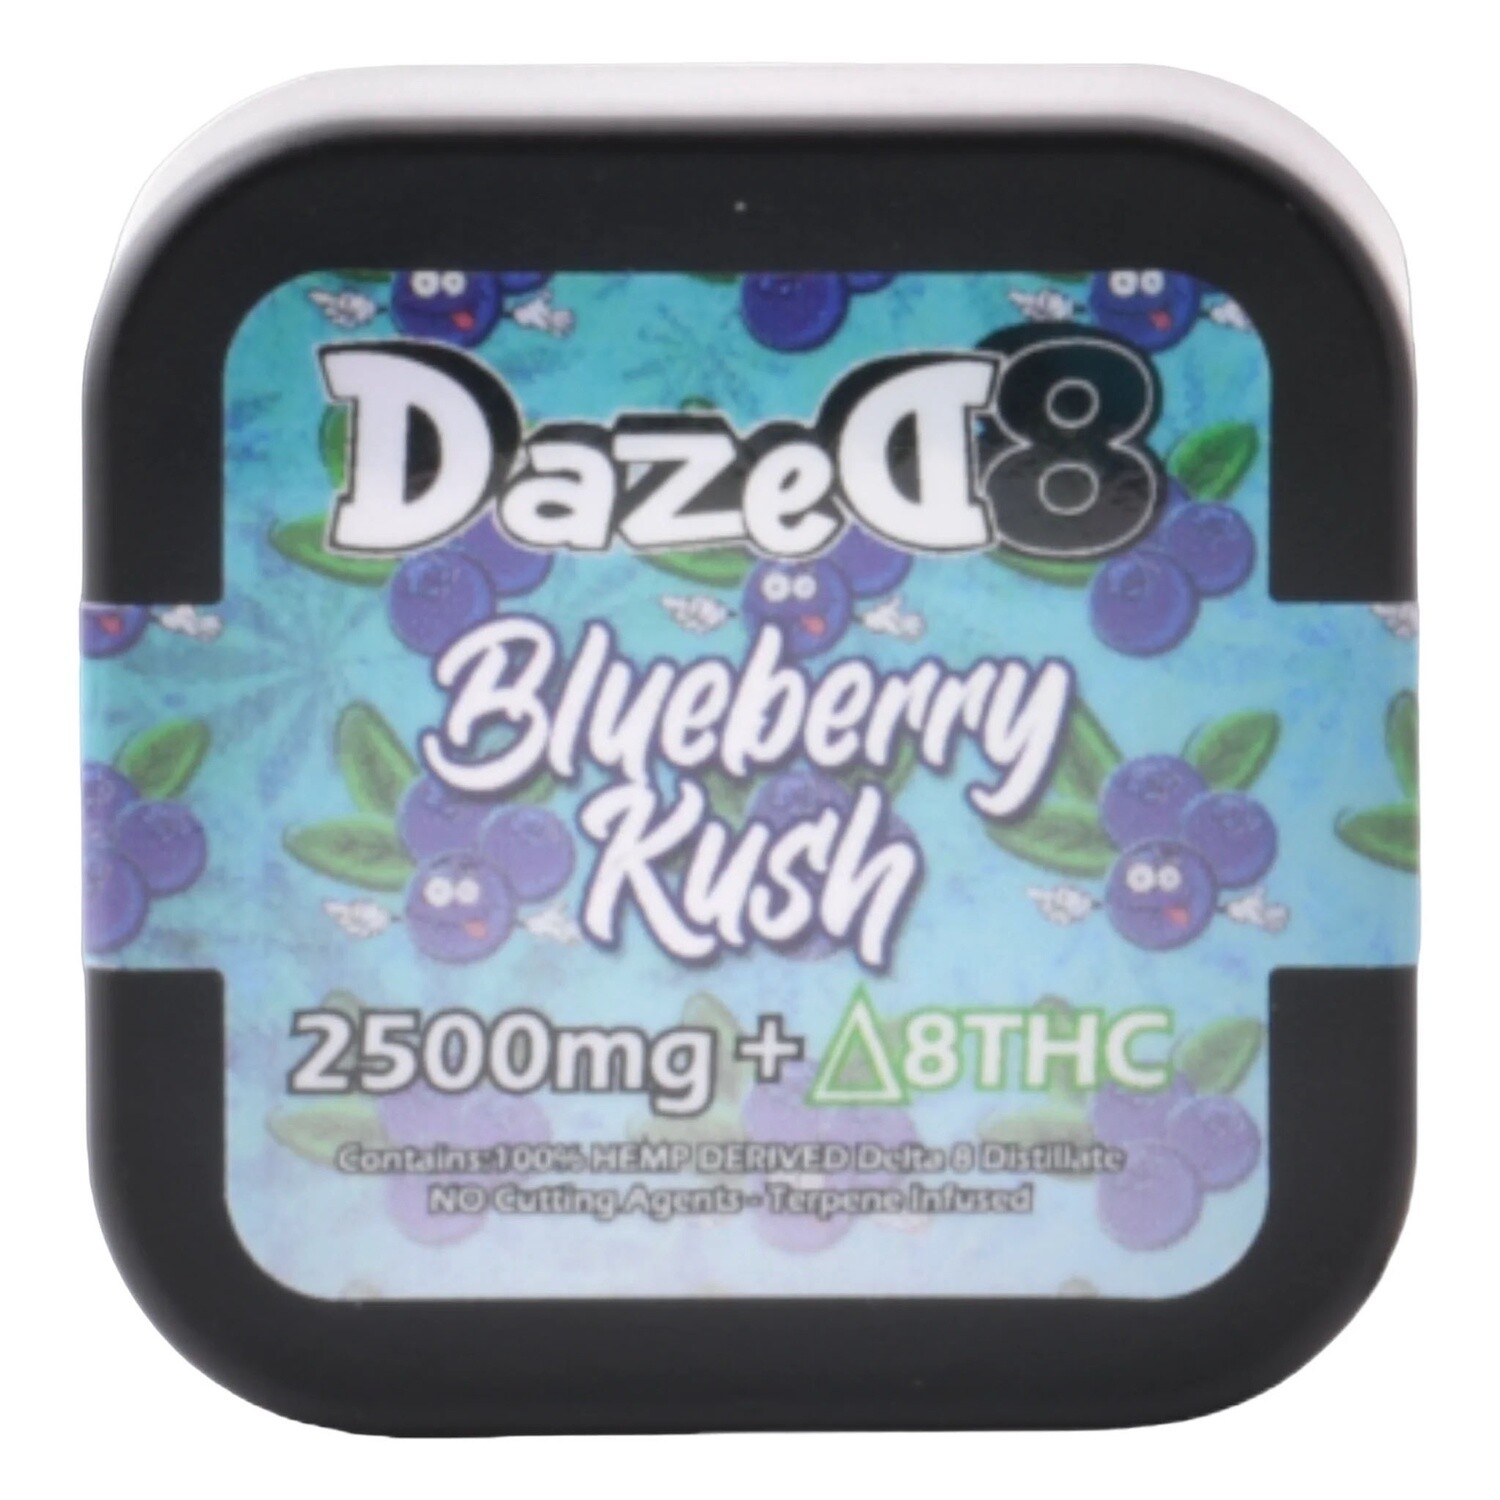 Dazed8, Dab 2.5G - Blueberry Kush D8